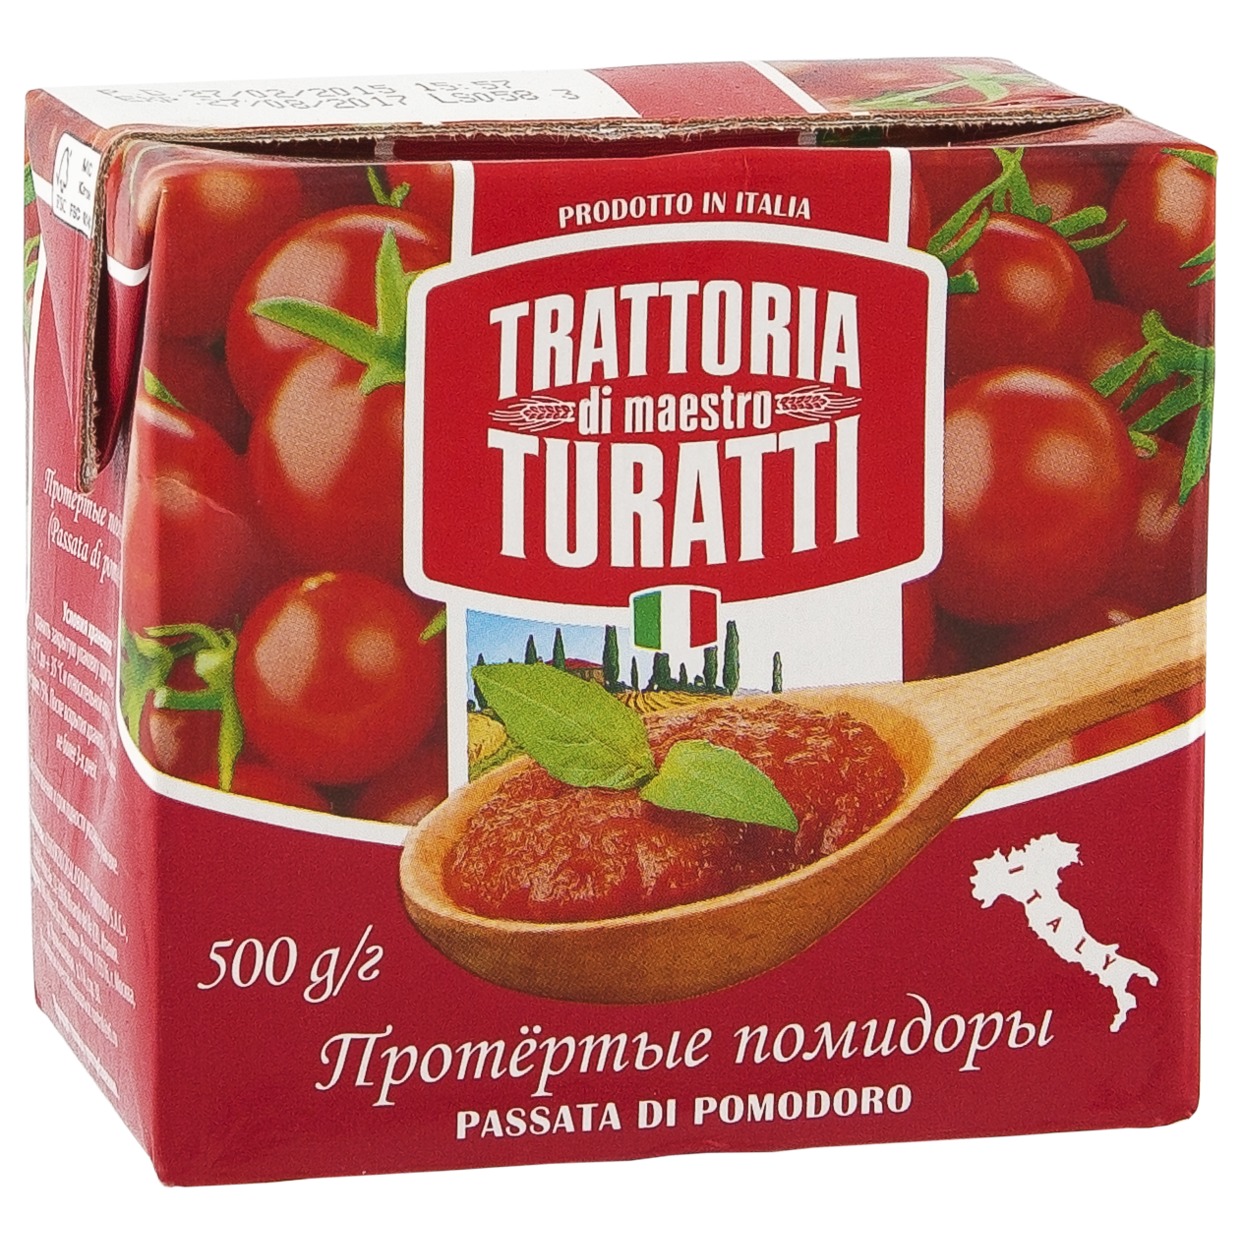 Овощи консервированные без добавления уксуса: Tоматы протертые, торговая маркаTRATTORIA DI MAESTRO TURATTI